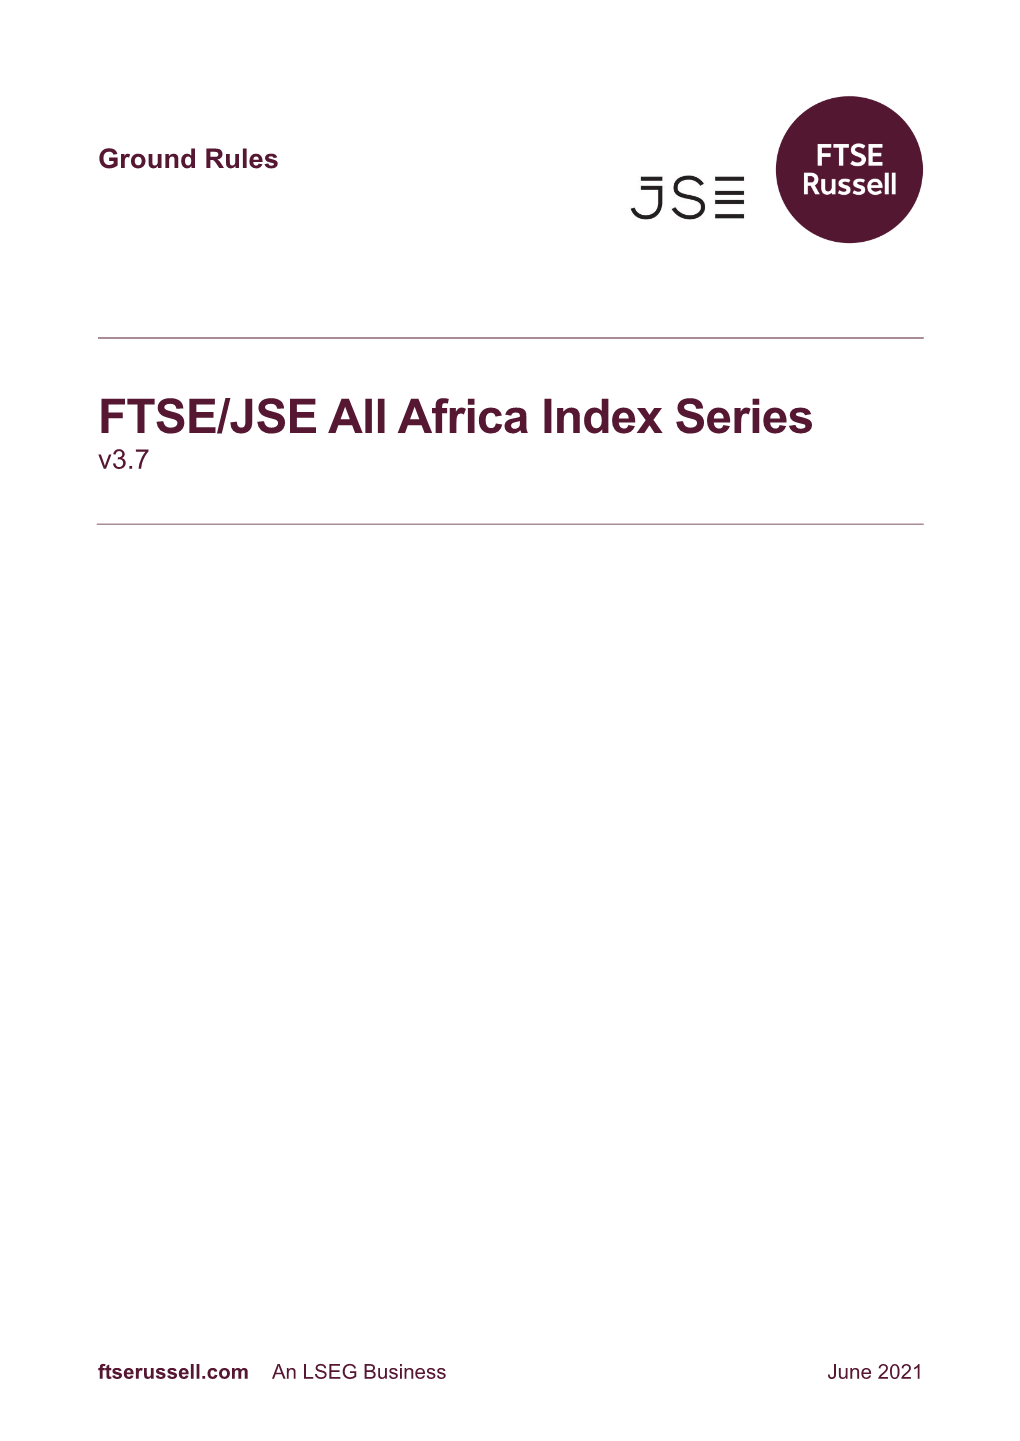 FTSE/JSE All Africa Index Series V3.7